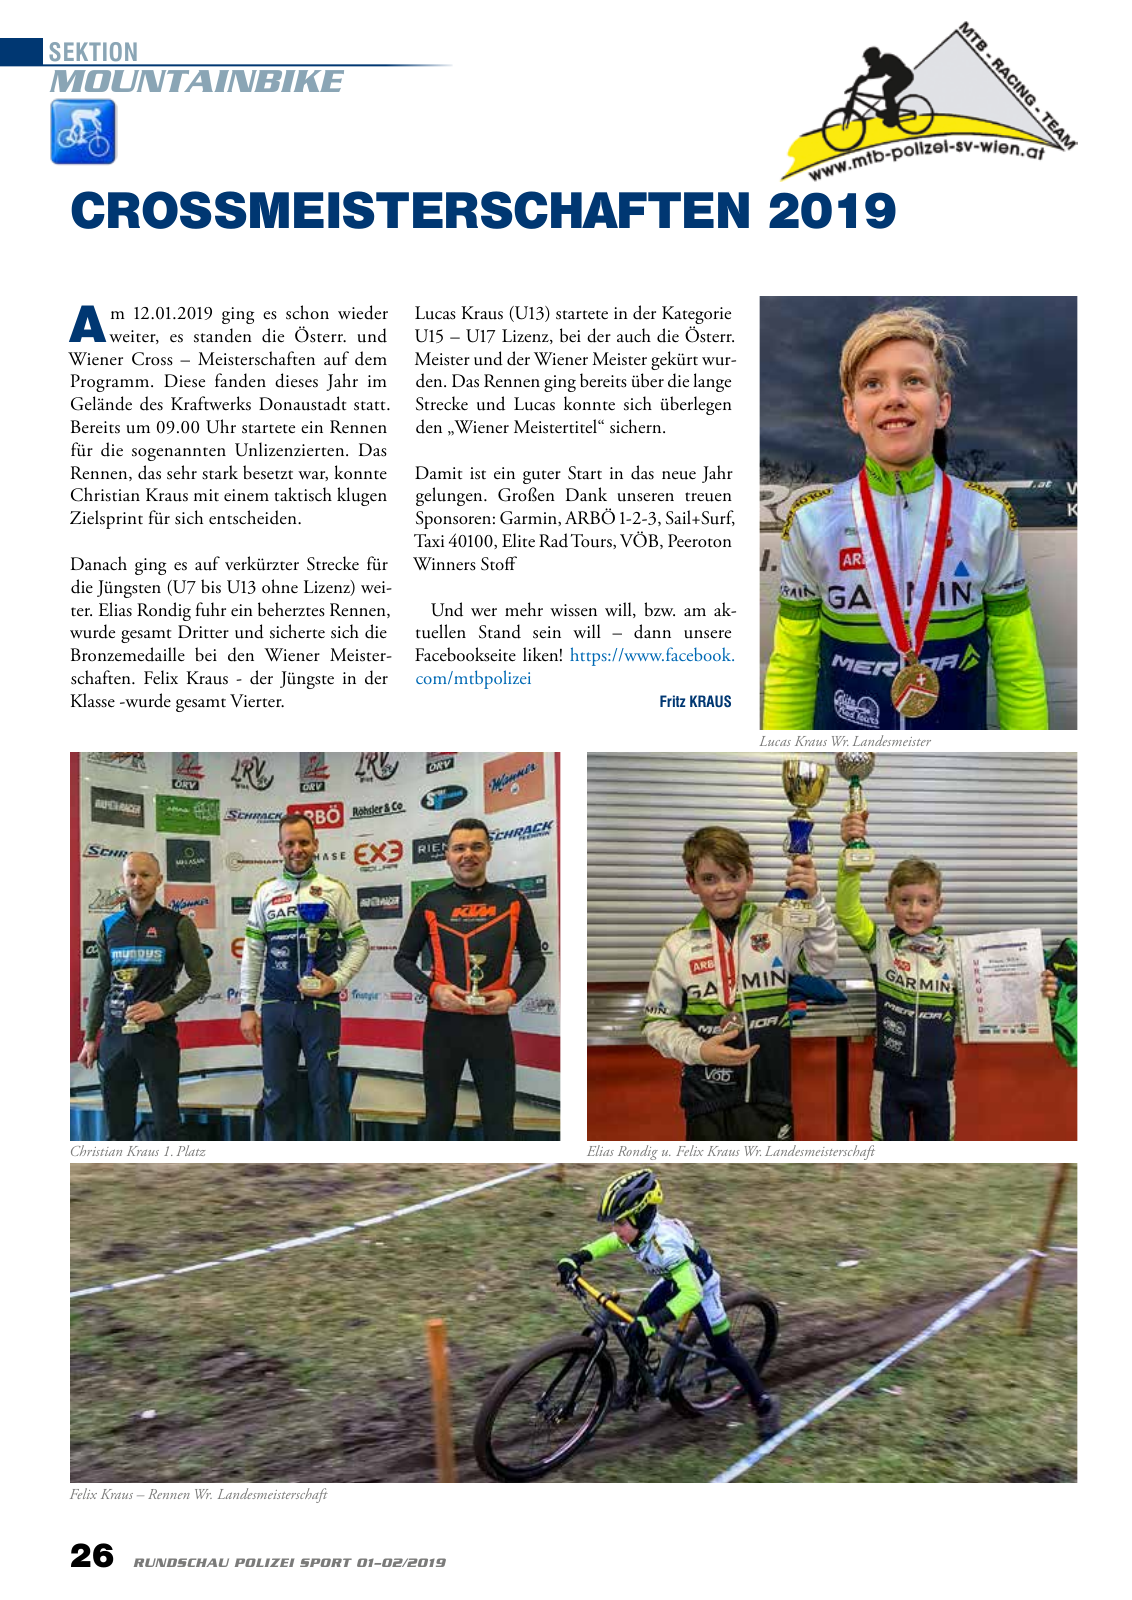 Vorschau Rundschau Polizei Sport 01-02/2019 Seite 26